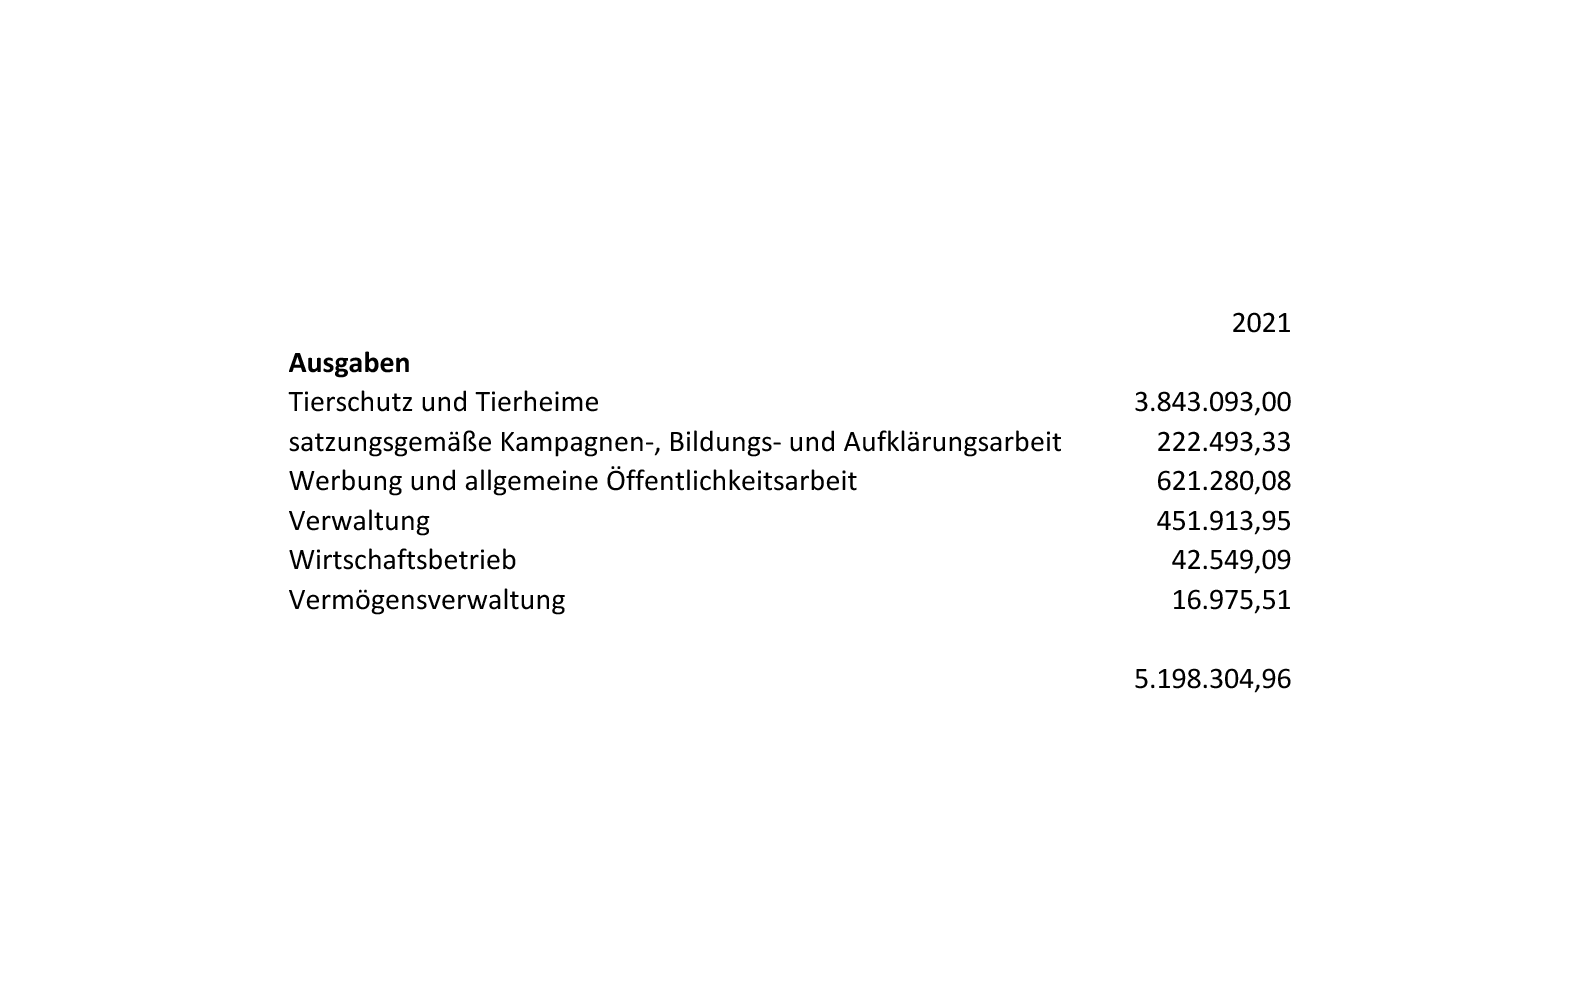 stiftungszahlen-2021-ausgaben Zahlen